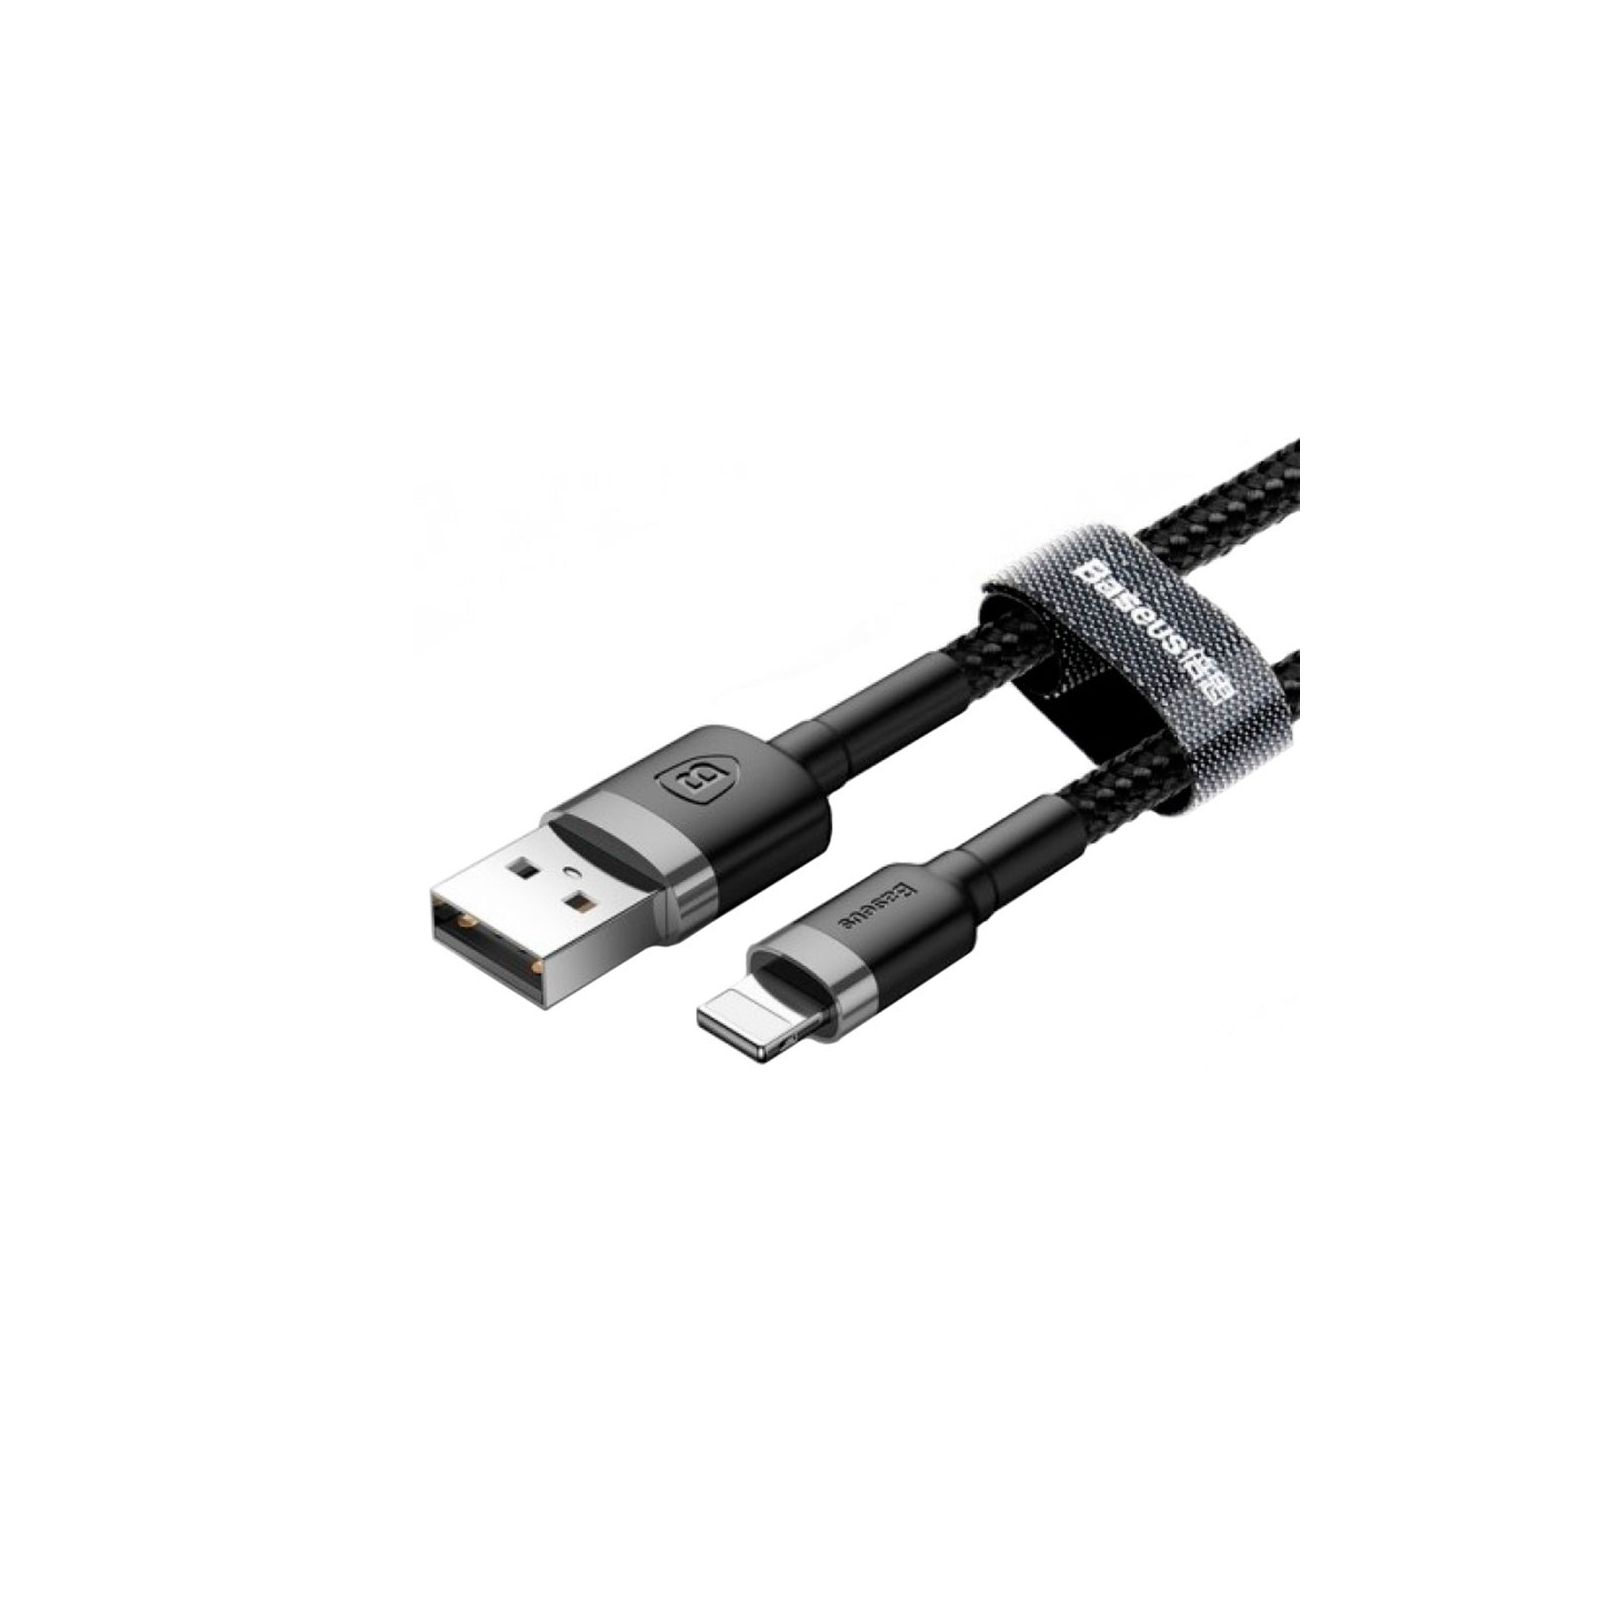 Дата кабель USB 2.0 AM to Lightning 2.0m Cafule 1.5A gray+black Baseus (CALKLF-CG1) изображение 4